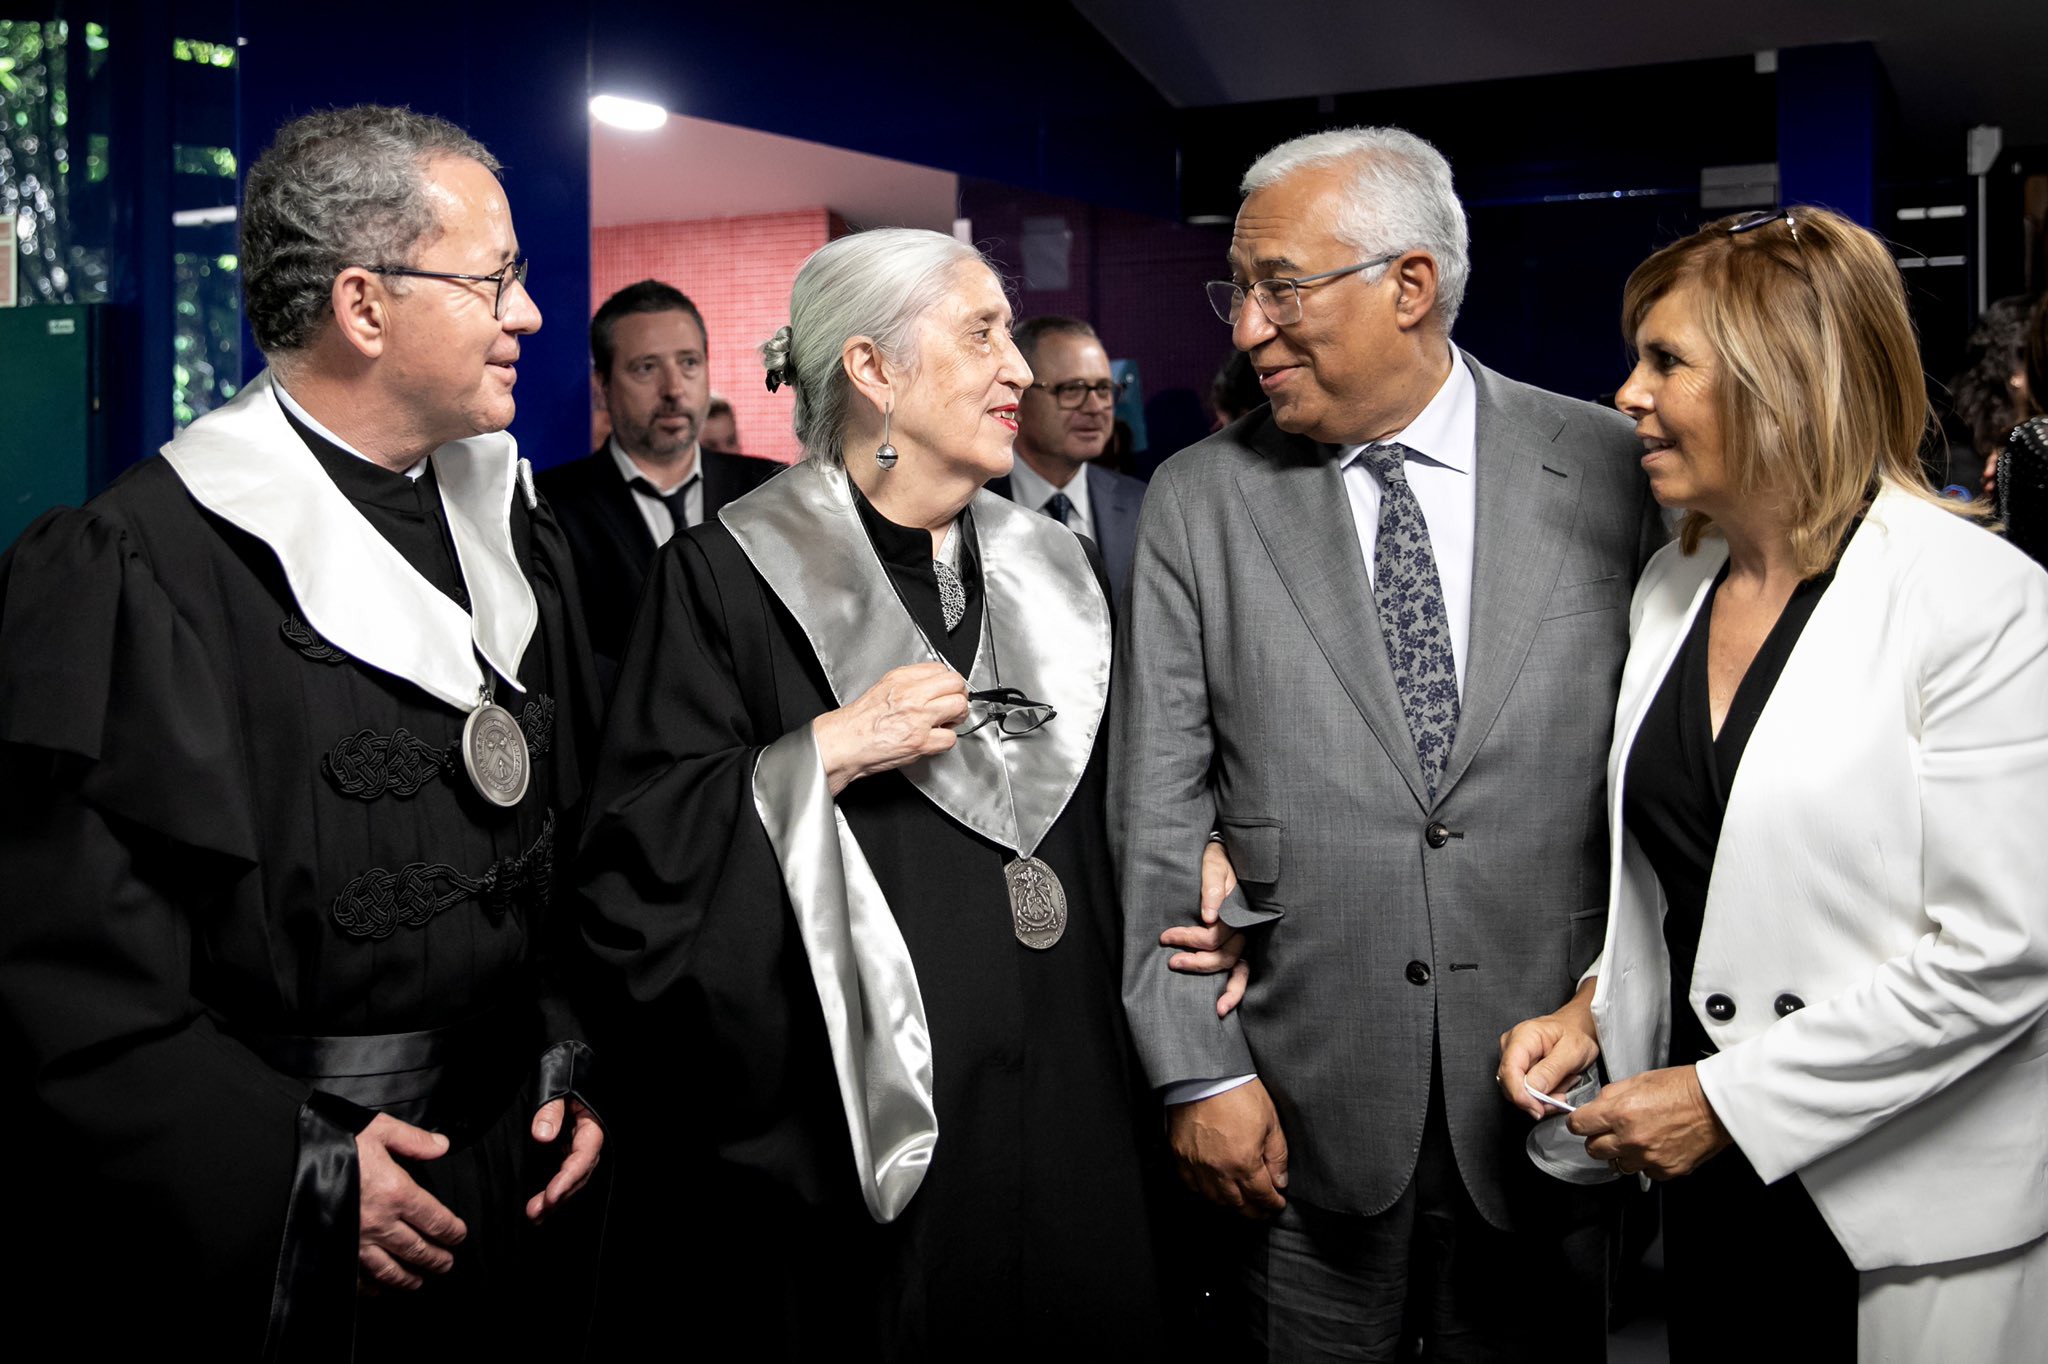 Pintora Graça Morais feliz com ‘honoris causa’ da universidade da sua região